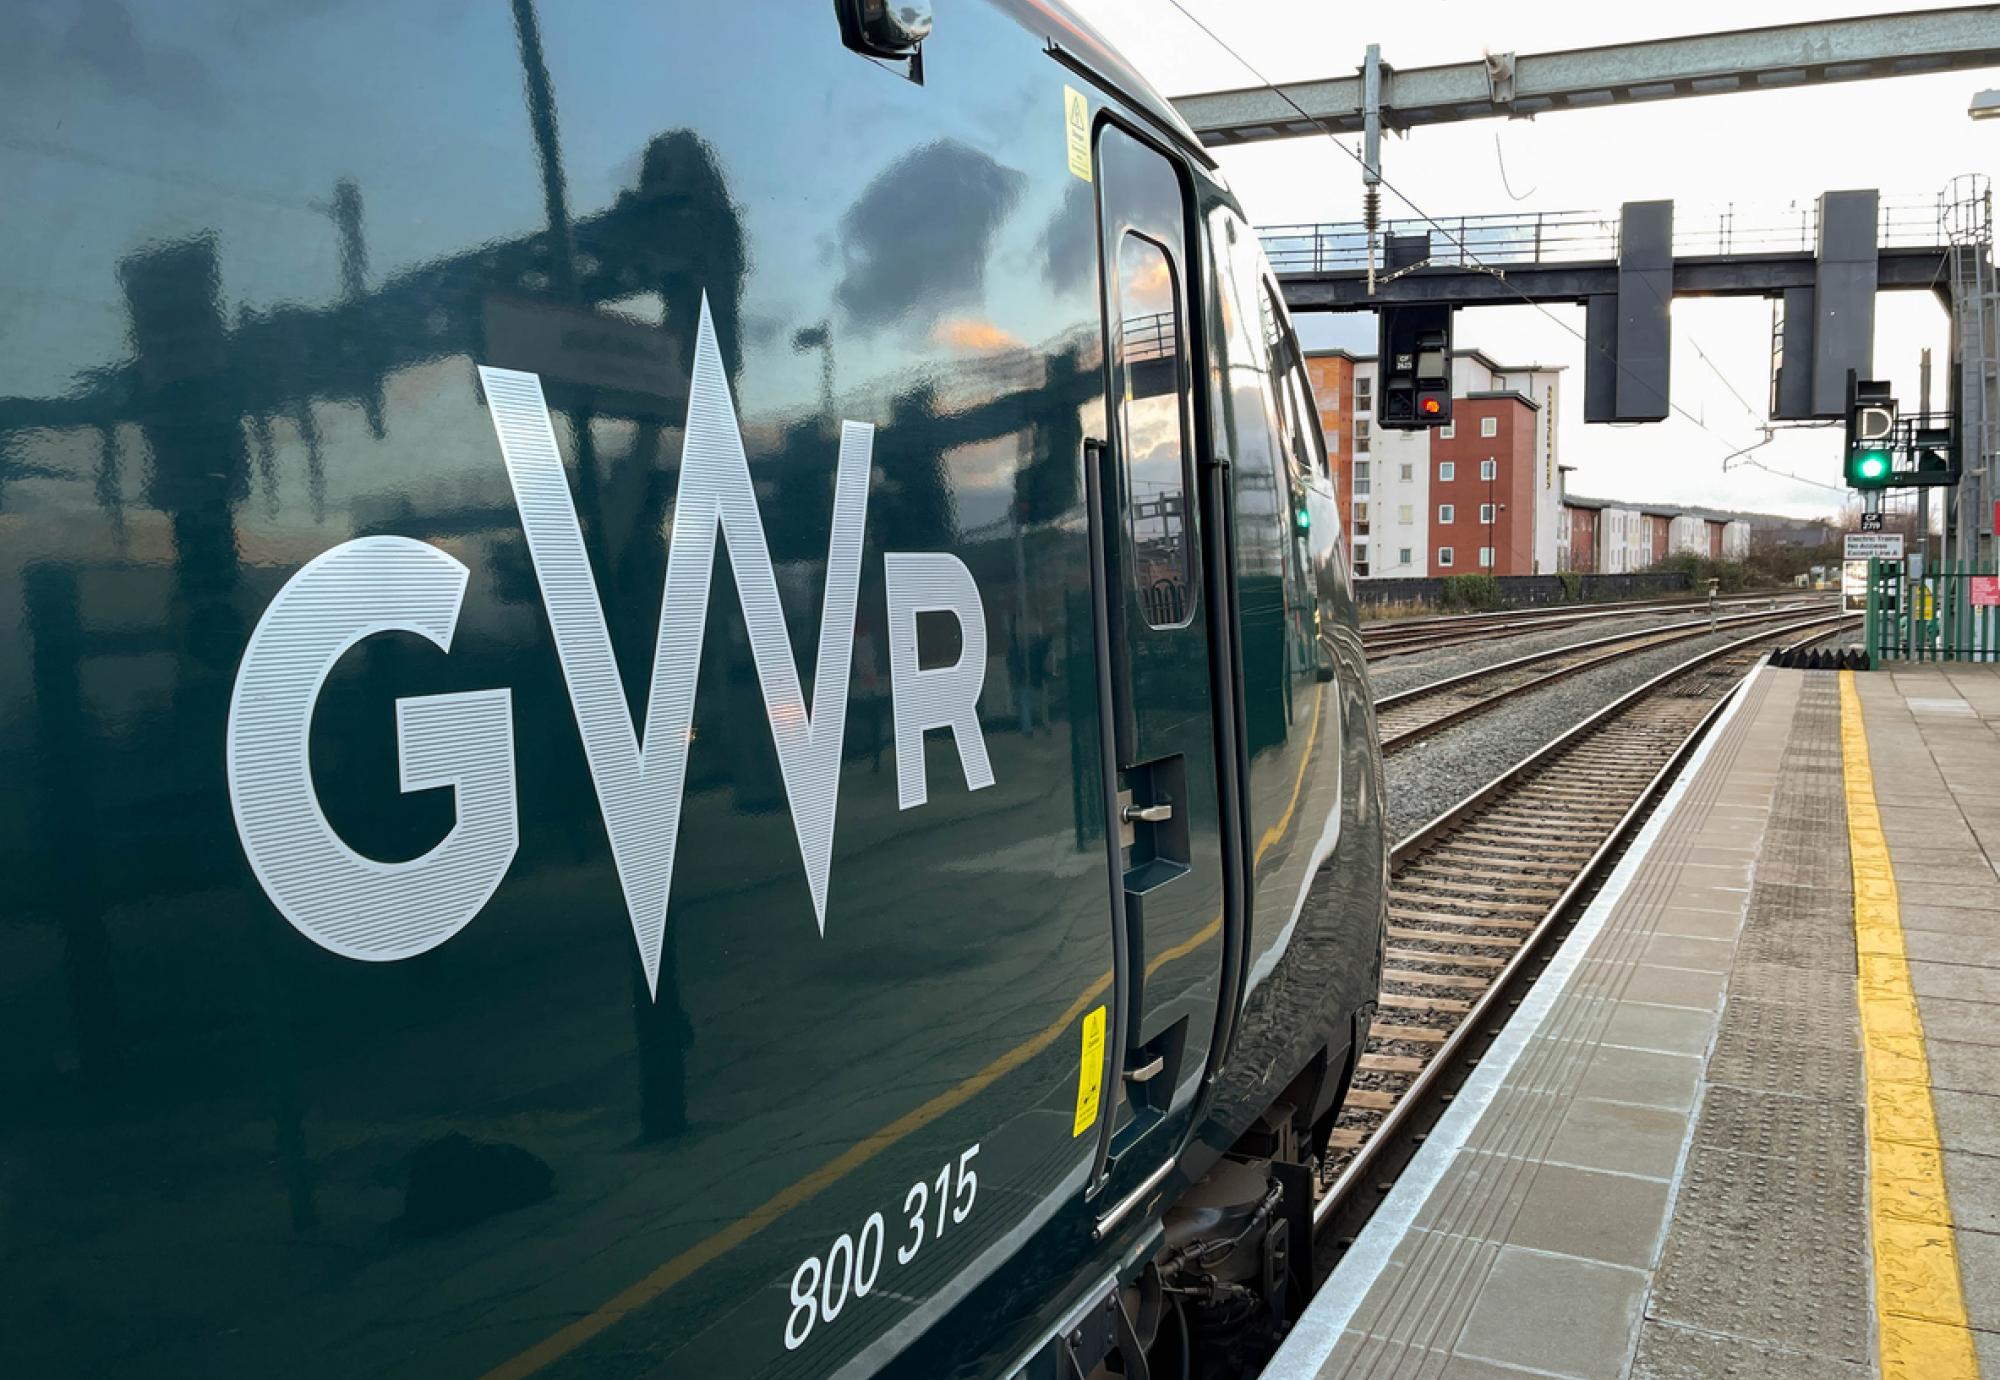 GWR train